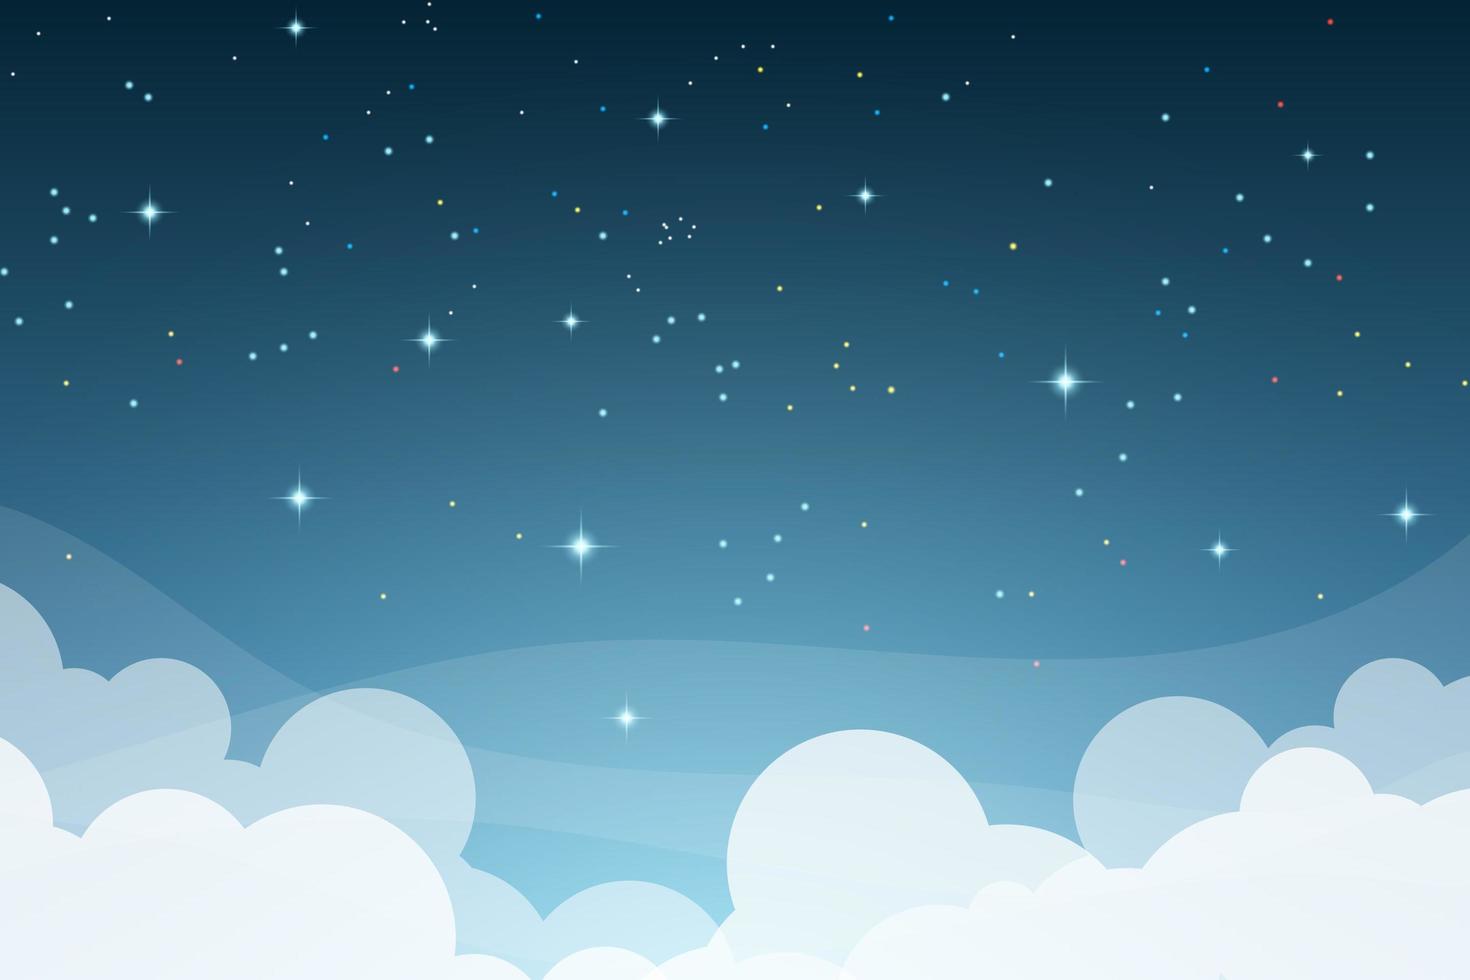 Beautiful night sky vector